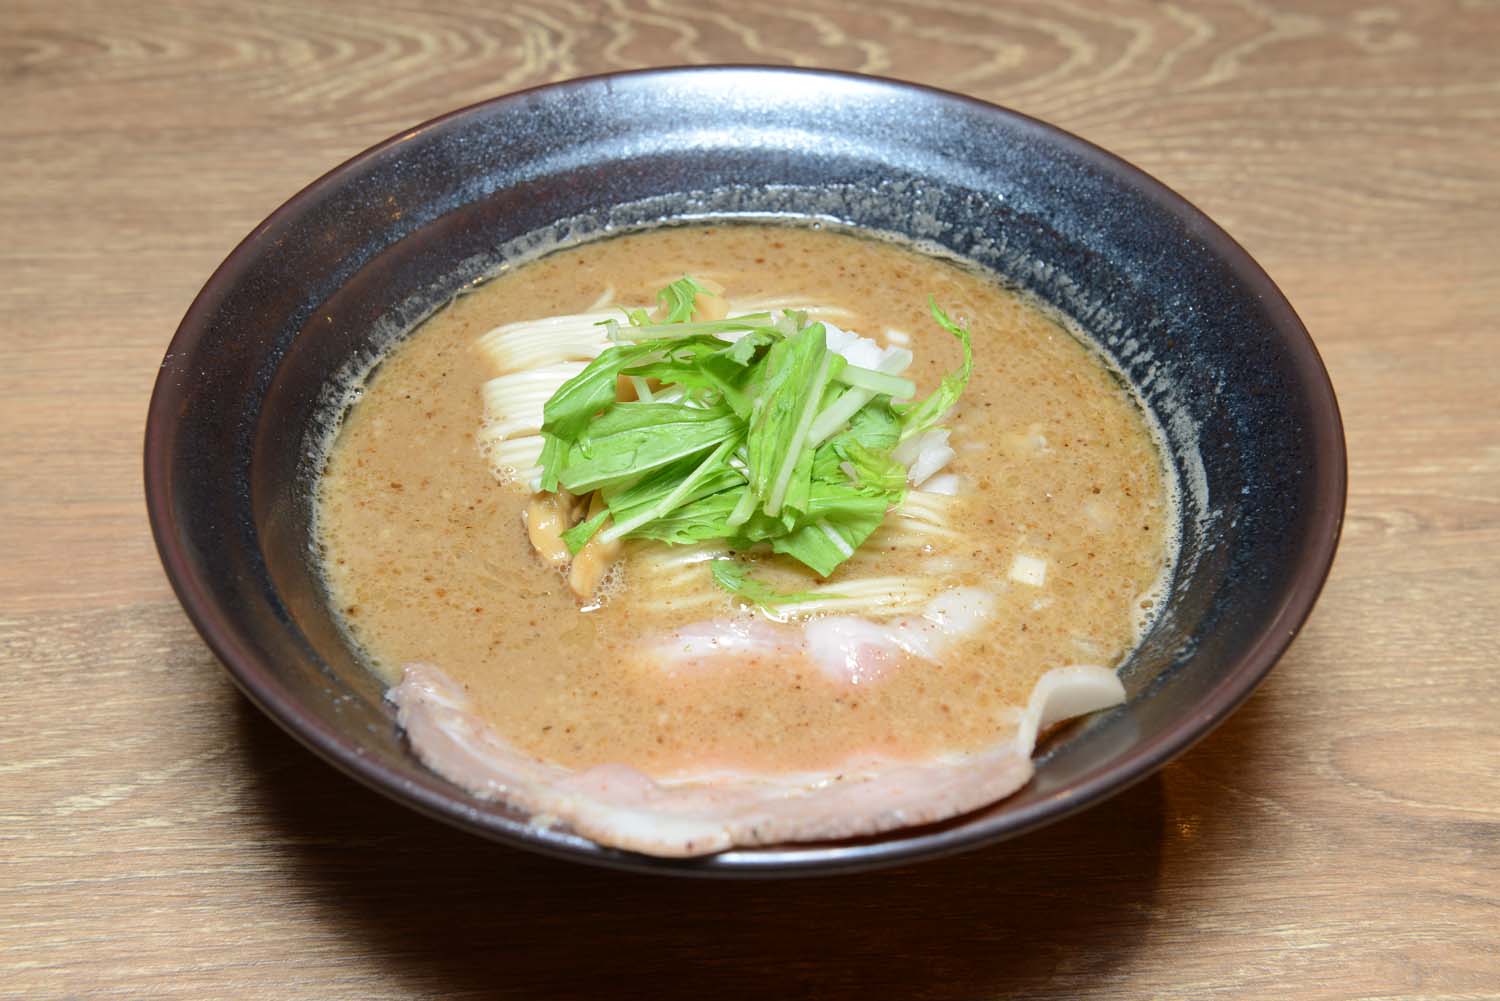 豚の旨味が凝縮された濃厚豚骨魚介拉麺。